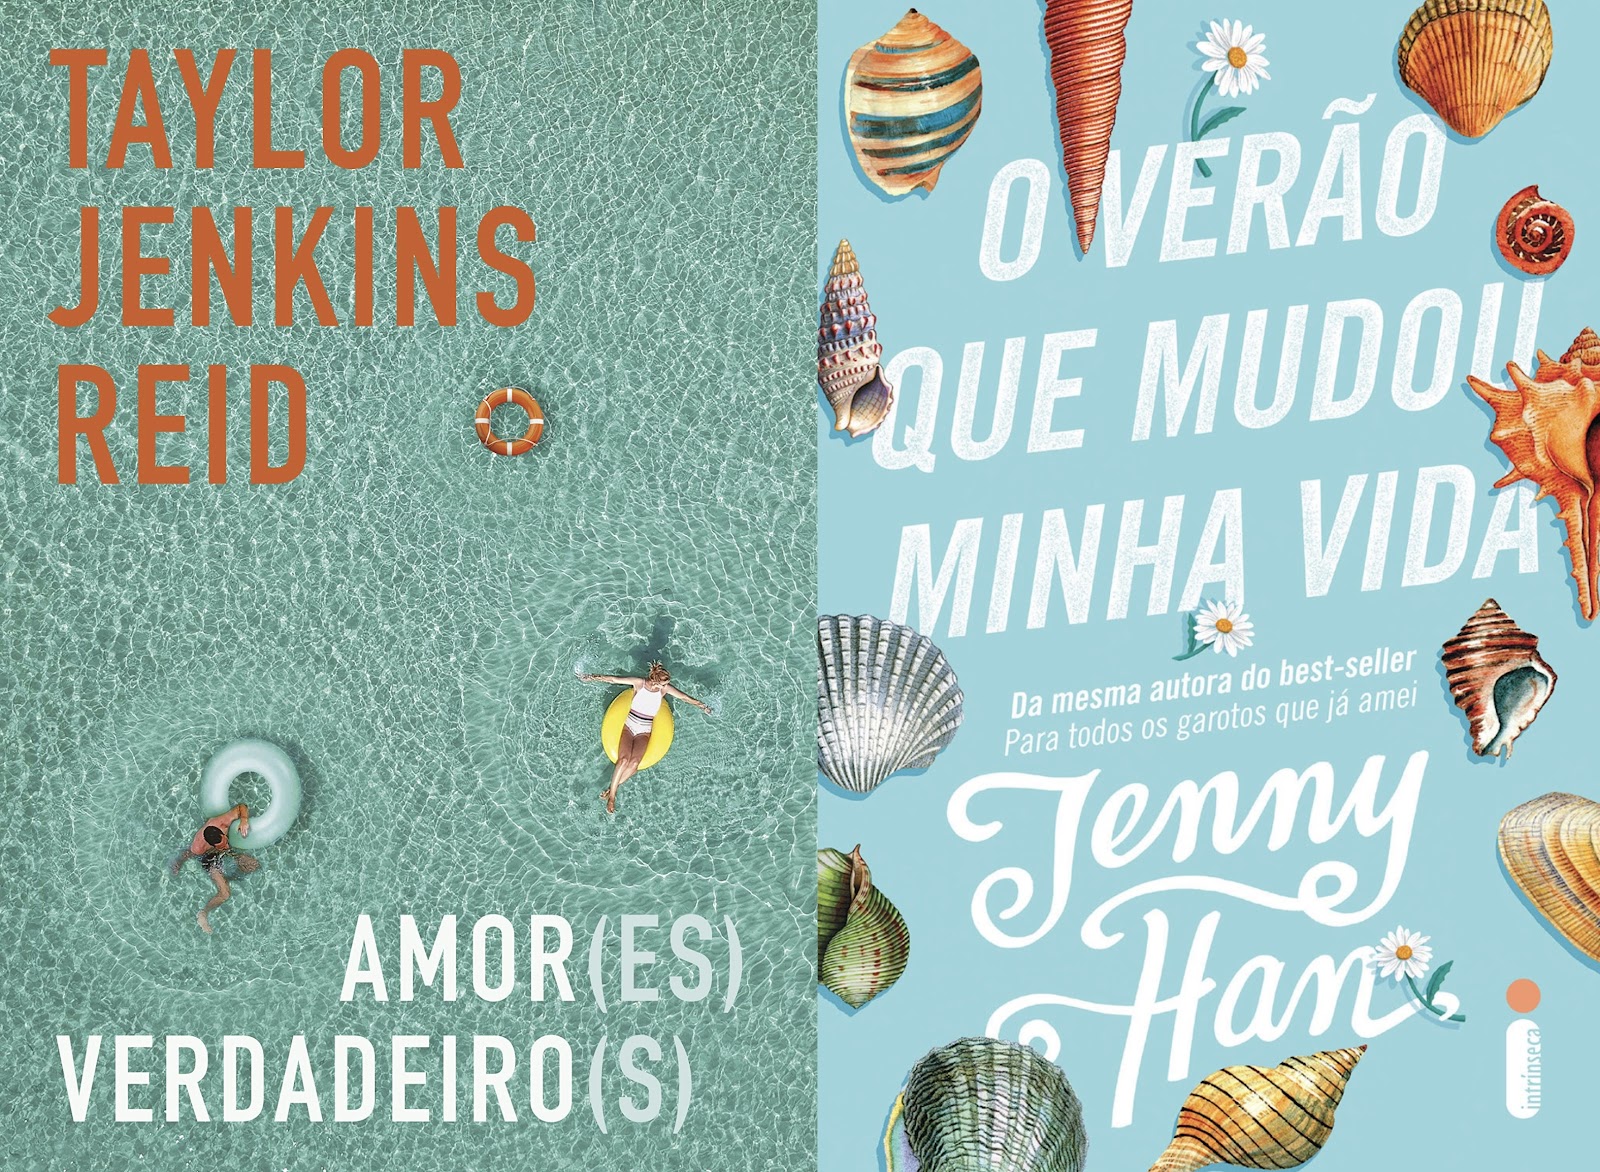 Capas dos livros Amor(es) Verdadeiro(s), por Taylor Jenkins Reid, e O Verão Que Mudou Minha Vida, por Jenny Han